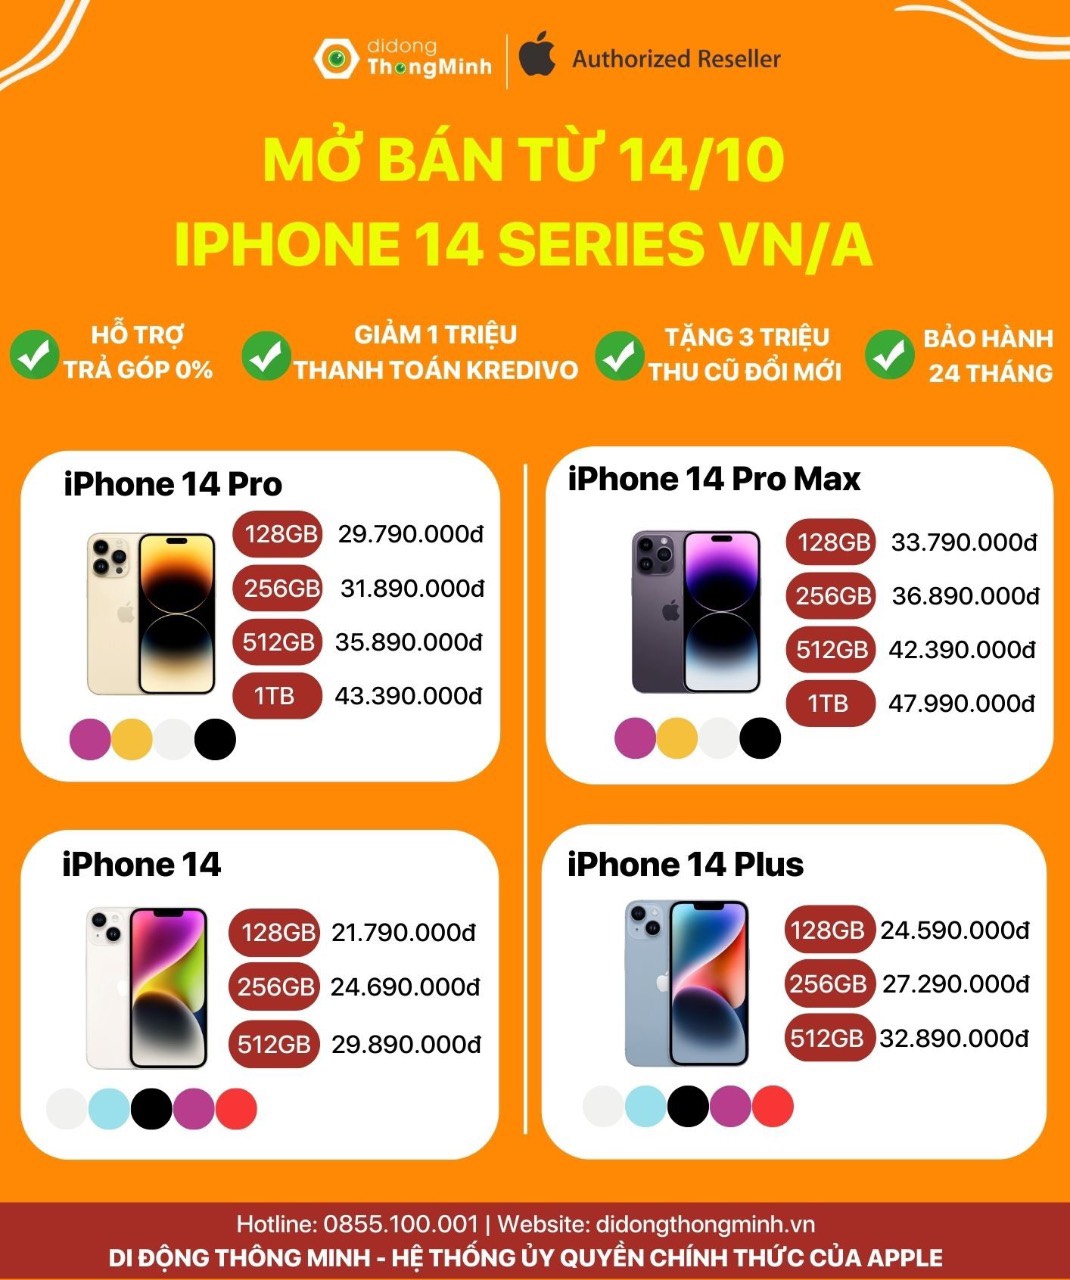 Cách để mua iPhone 14 Pro Max giá rẻ| Di Động Thông Minh